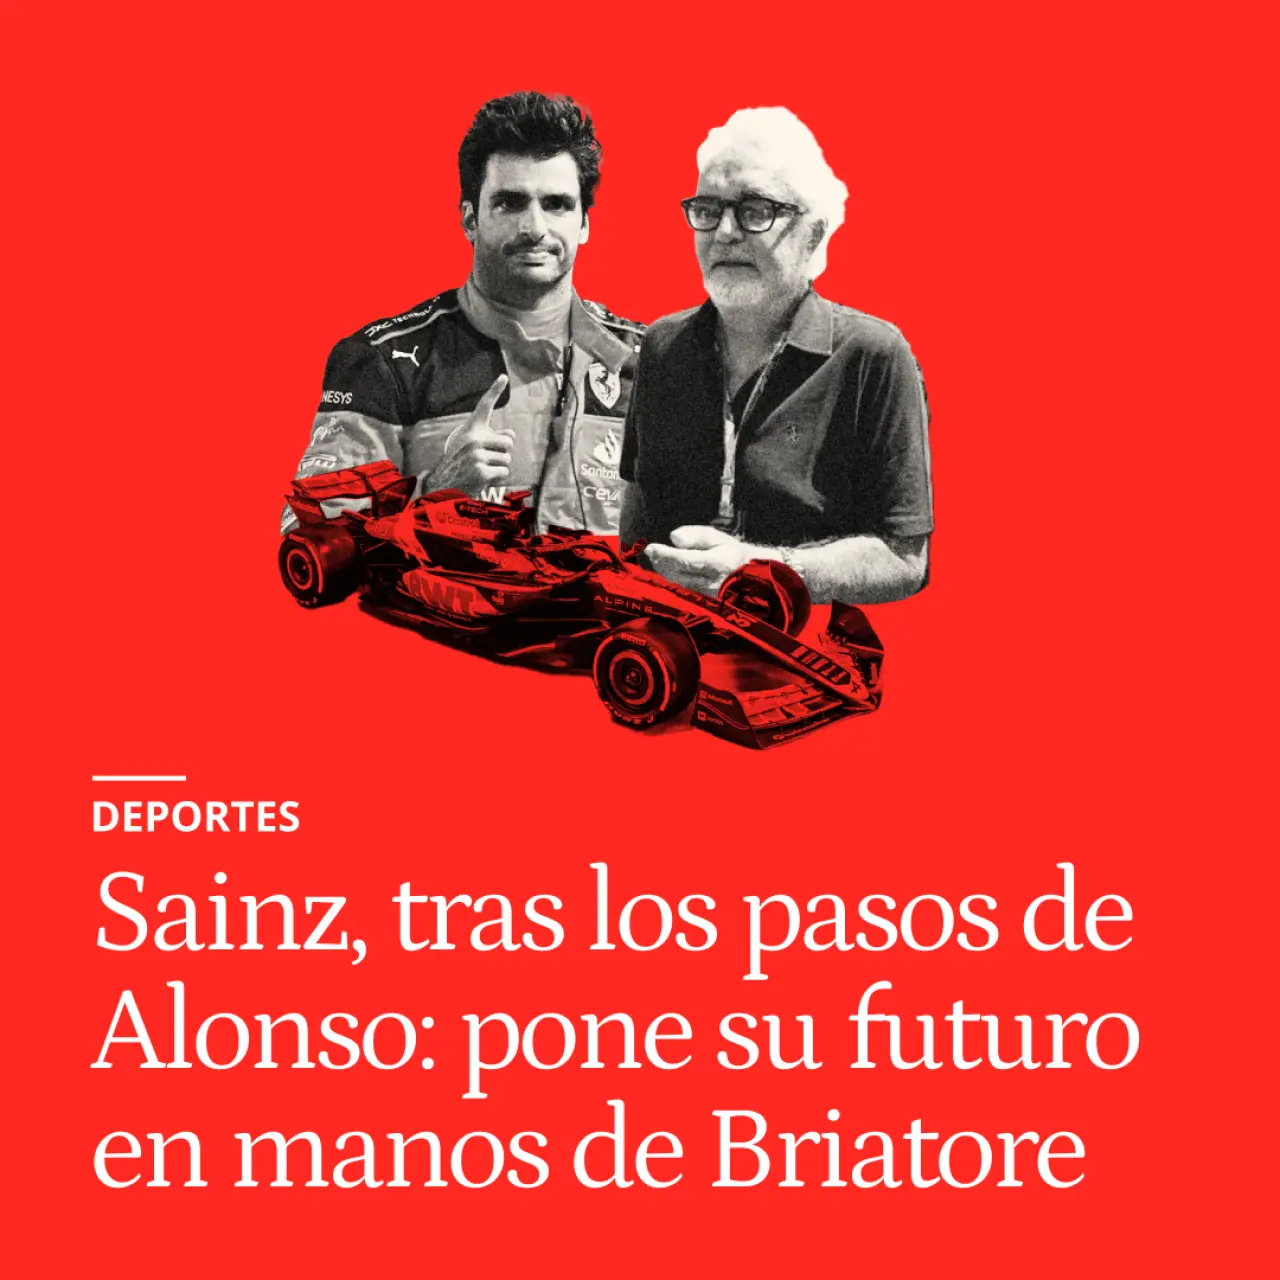 Carlos Sainz, tras los pasos de Fernando Alonso: pone su futuro en manos de Briatore y el nuevo Alpine